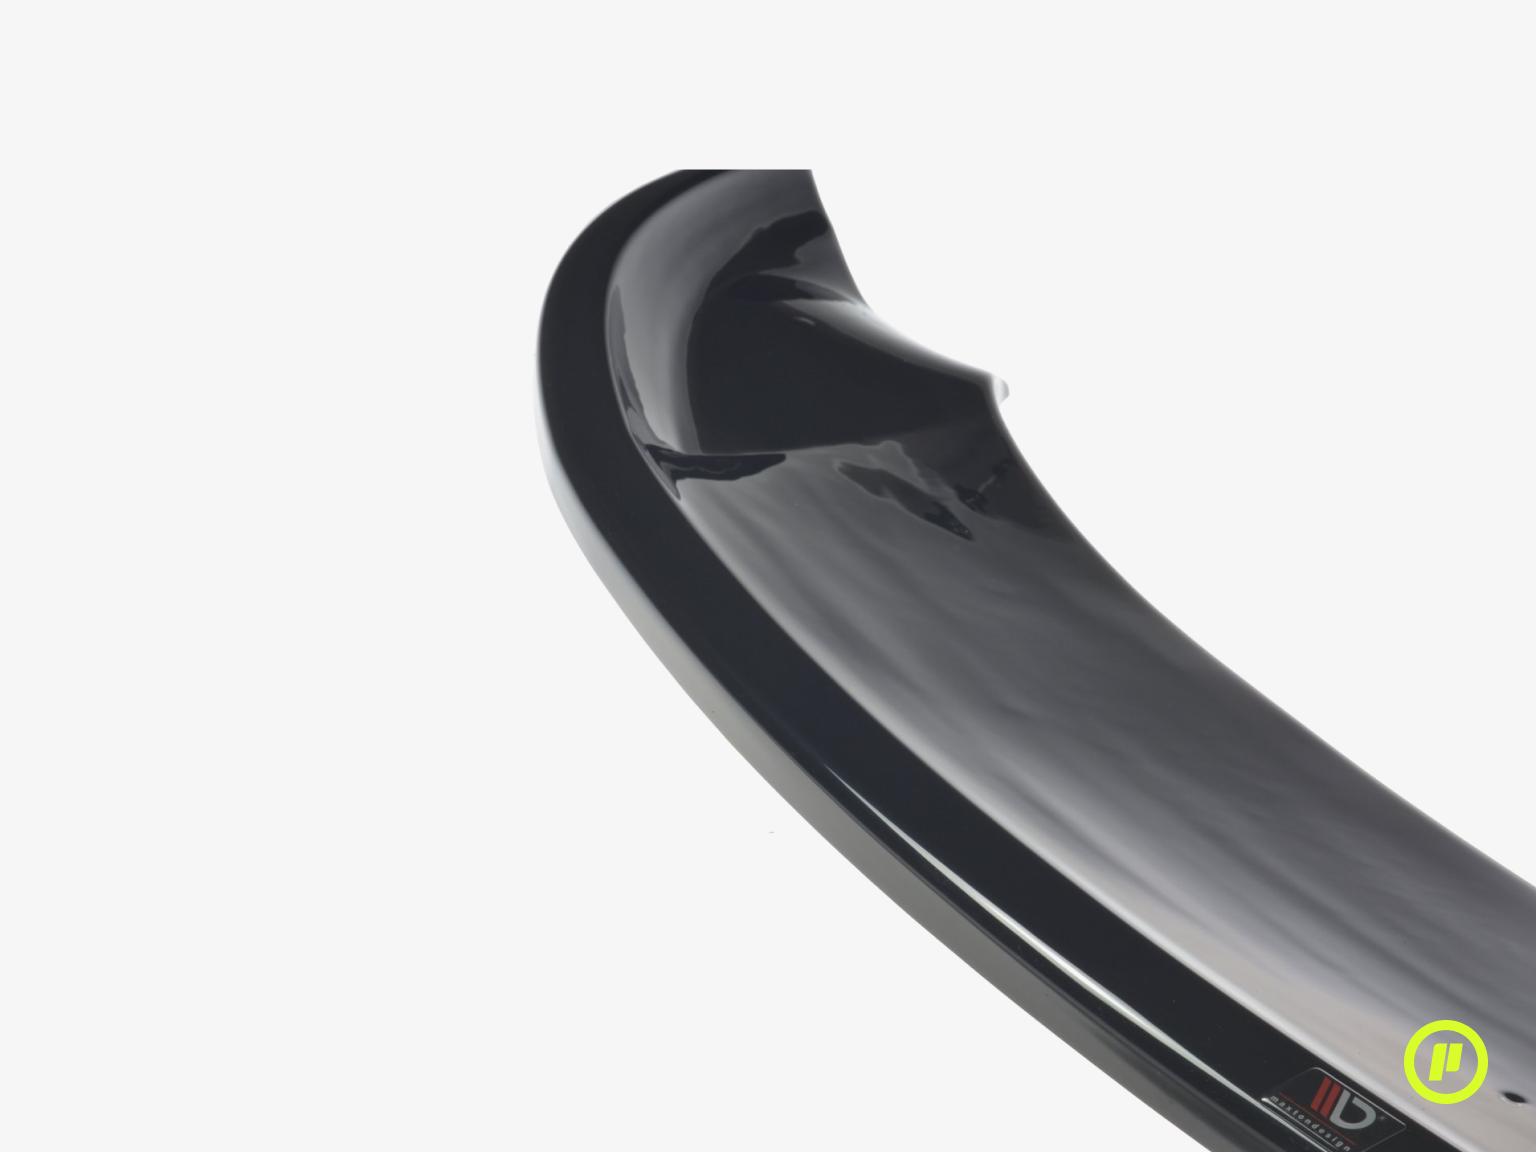 Maxton Design - Front Splitter for Tesla Model 3 (2017+)